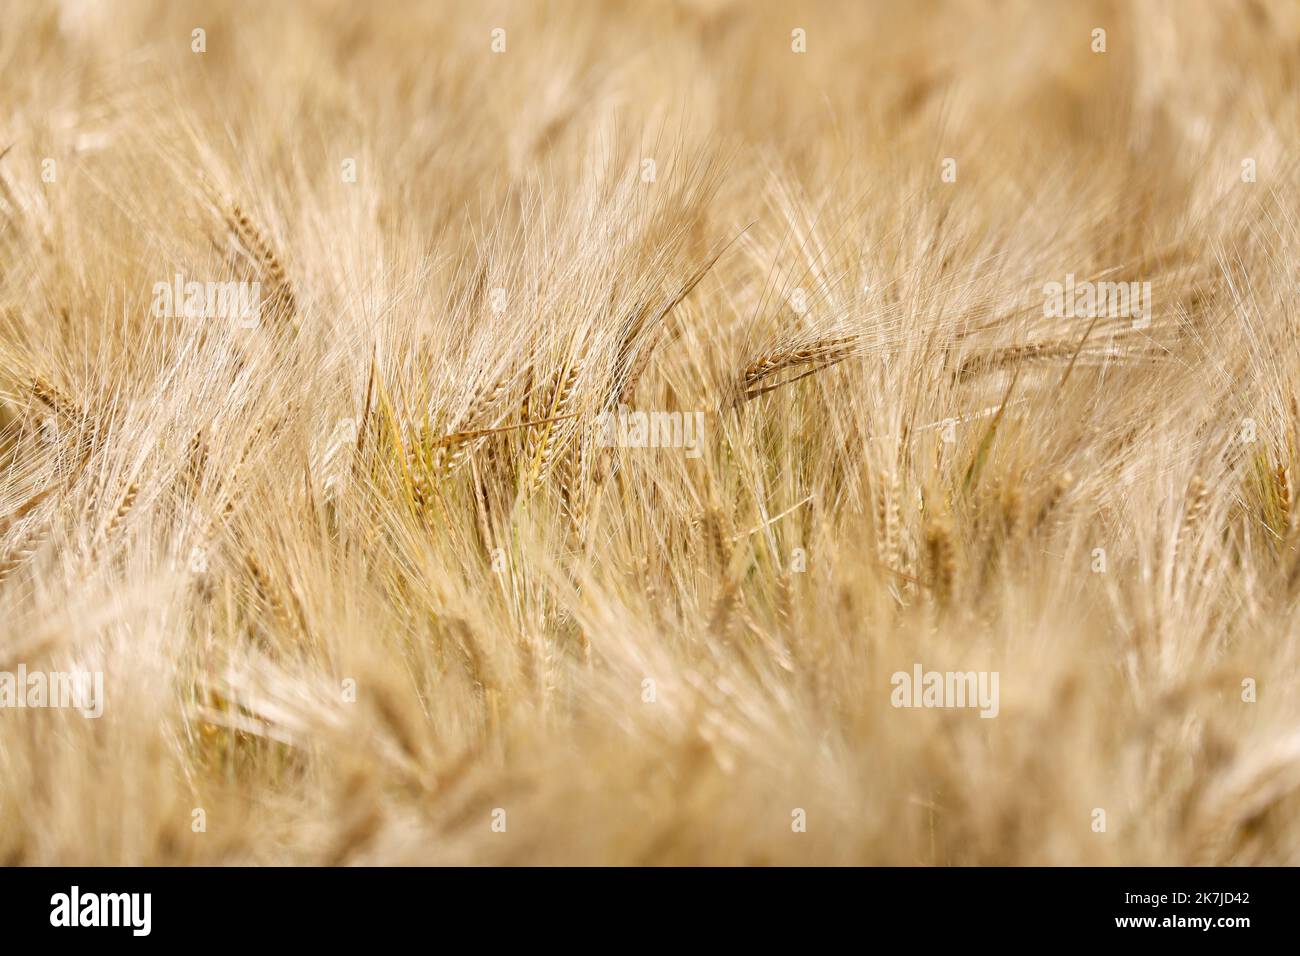 ©PHOTOPQR/VOIX DU NORD/Thierry Thorel ; 22/06/2022 ; Linselles - Le 22 juin 2022 : un champ de ble dans la campagne de la Vallee de la Lys - Photo : Thierry THOREL / La Voix du Nord - STOCK PICTURE a wheat field in the countryside in northern France Stock Photo